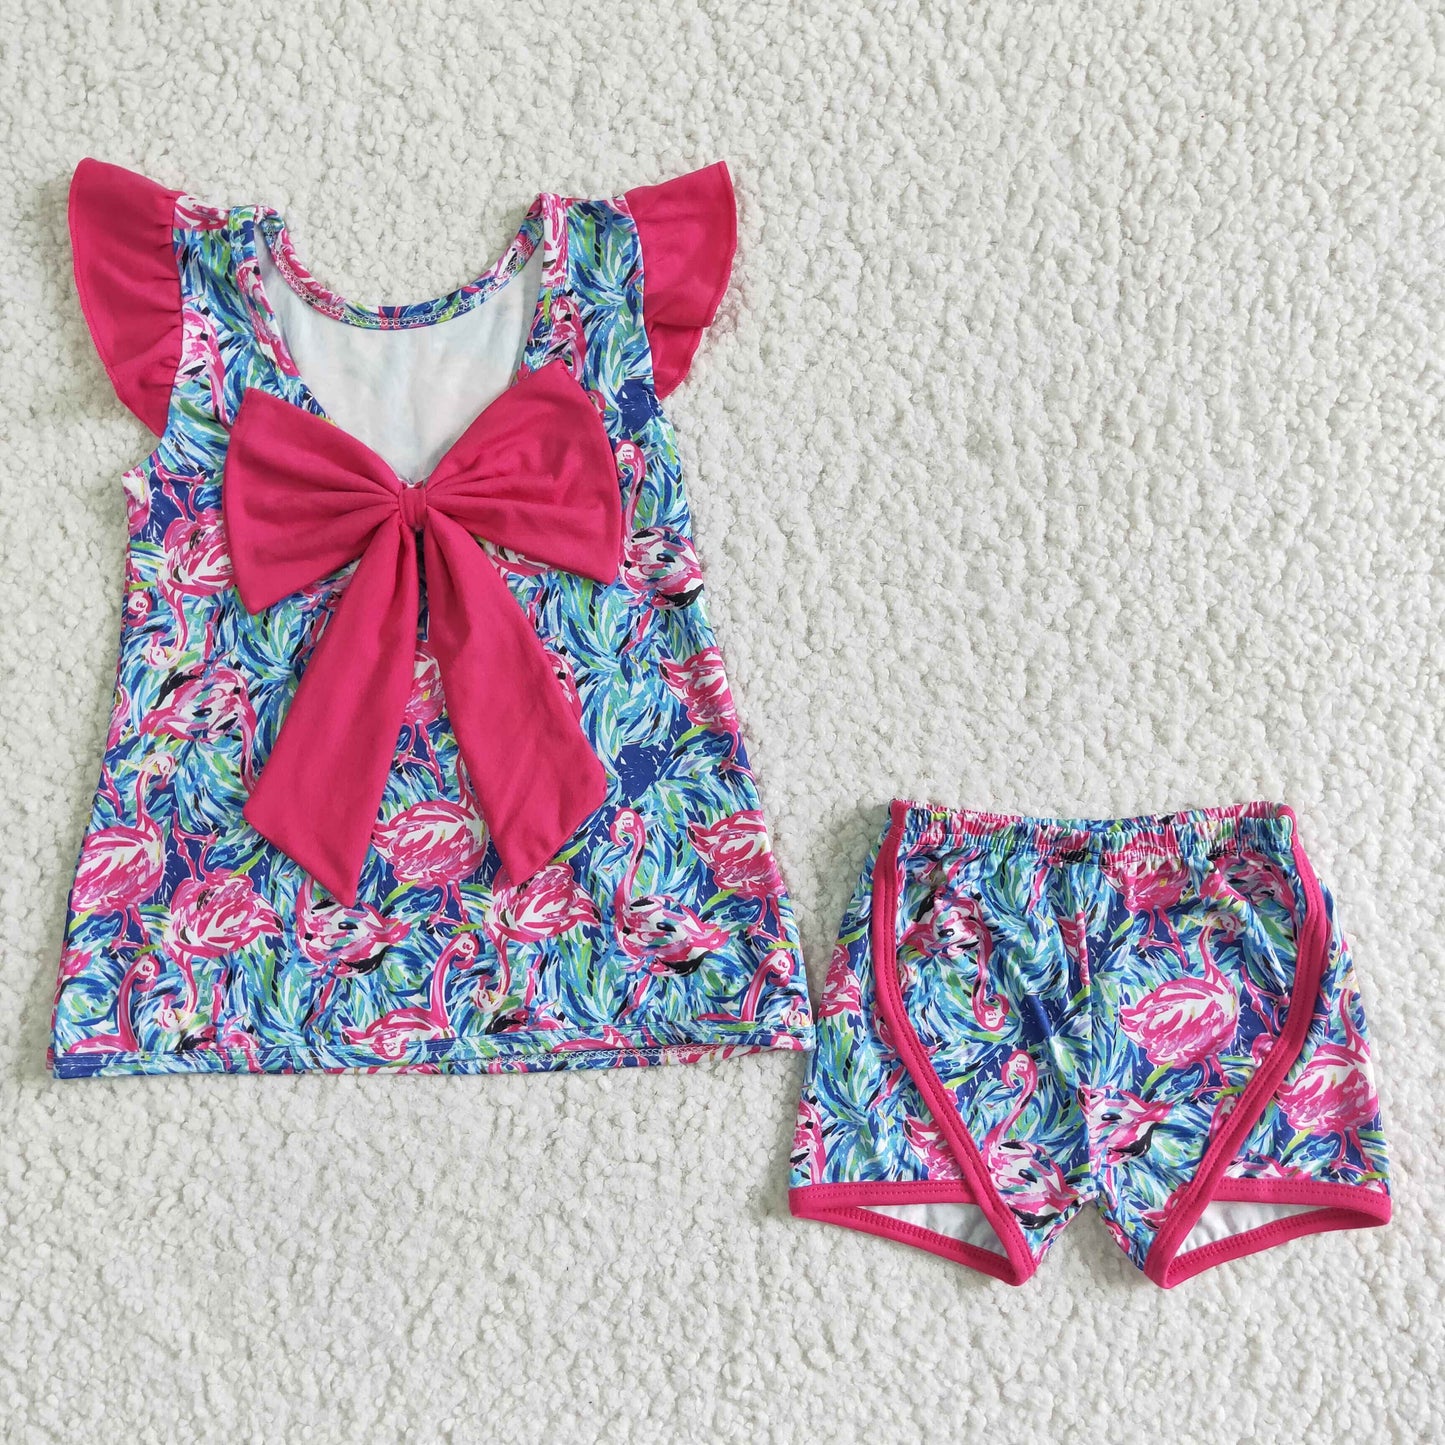 kids clothing hot pink flamingo shorts set